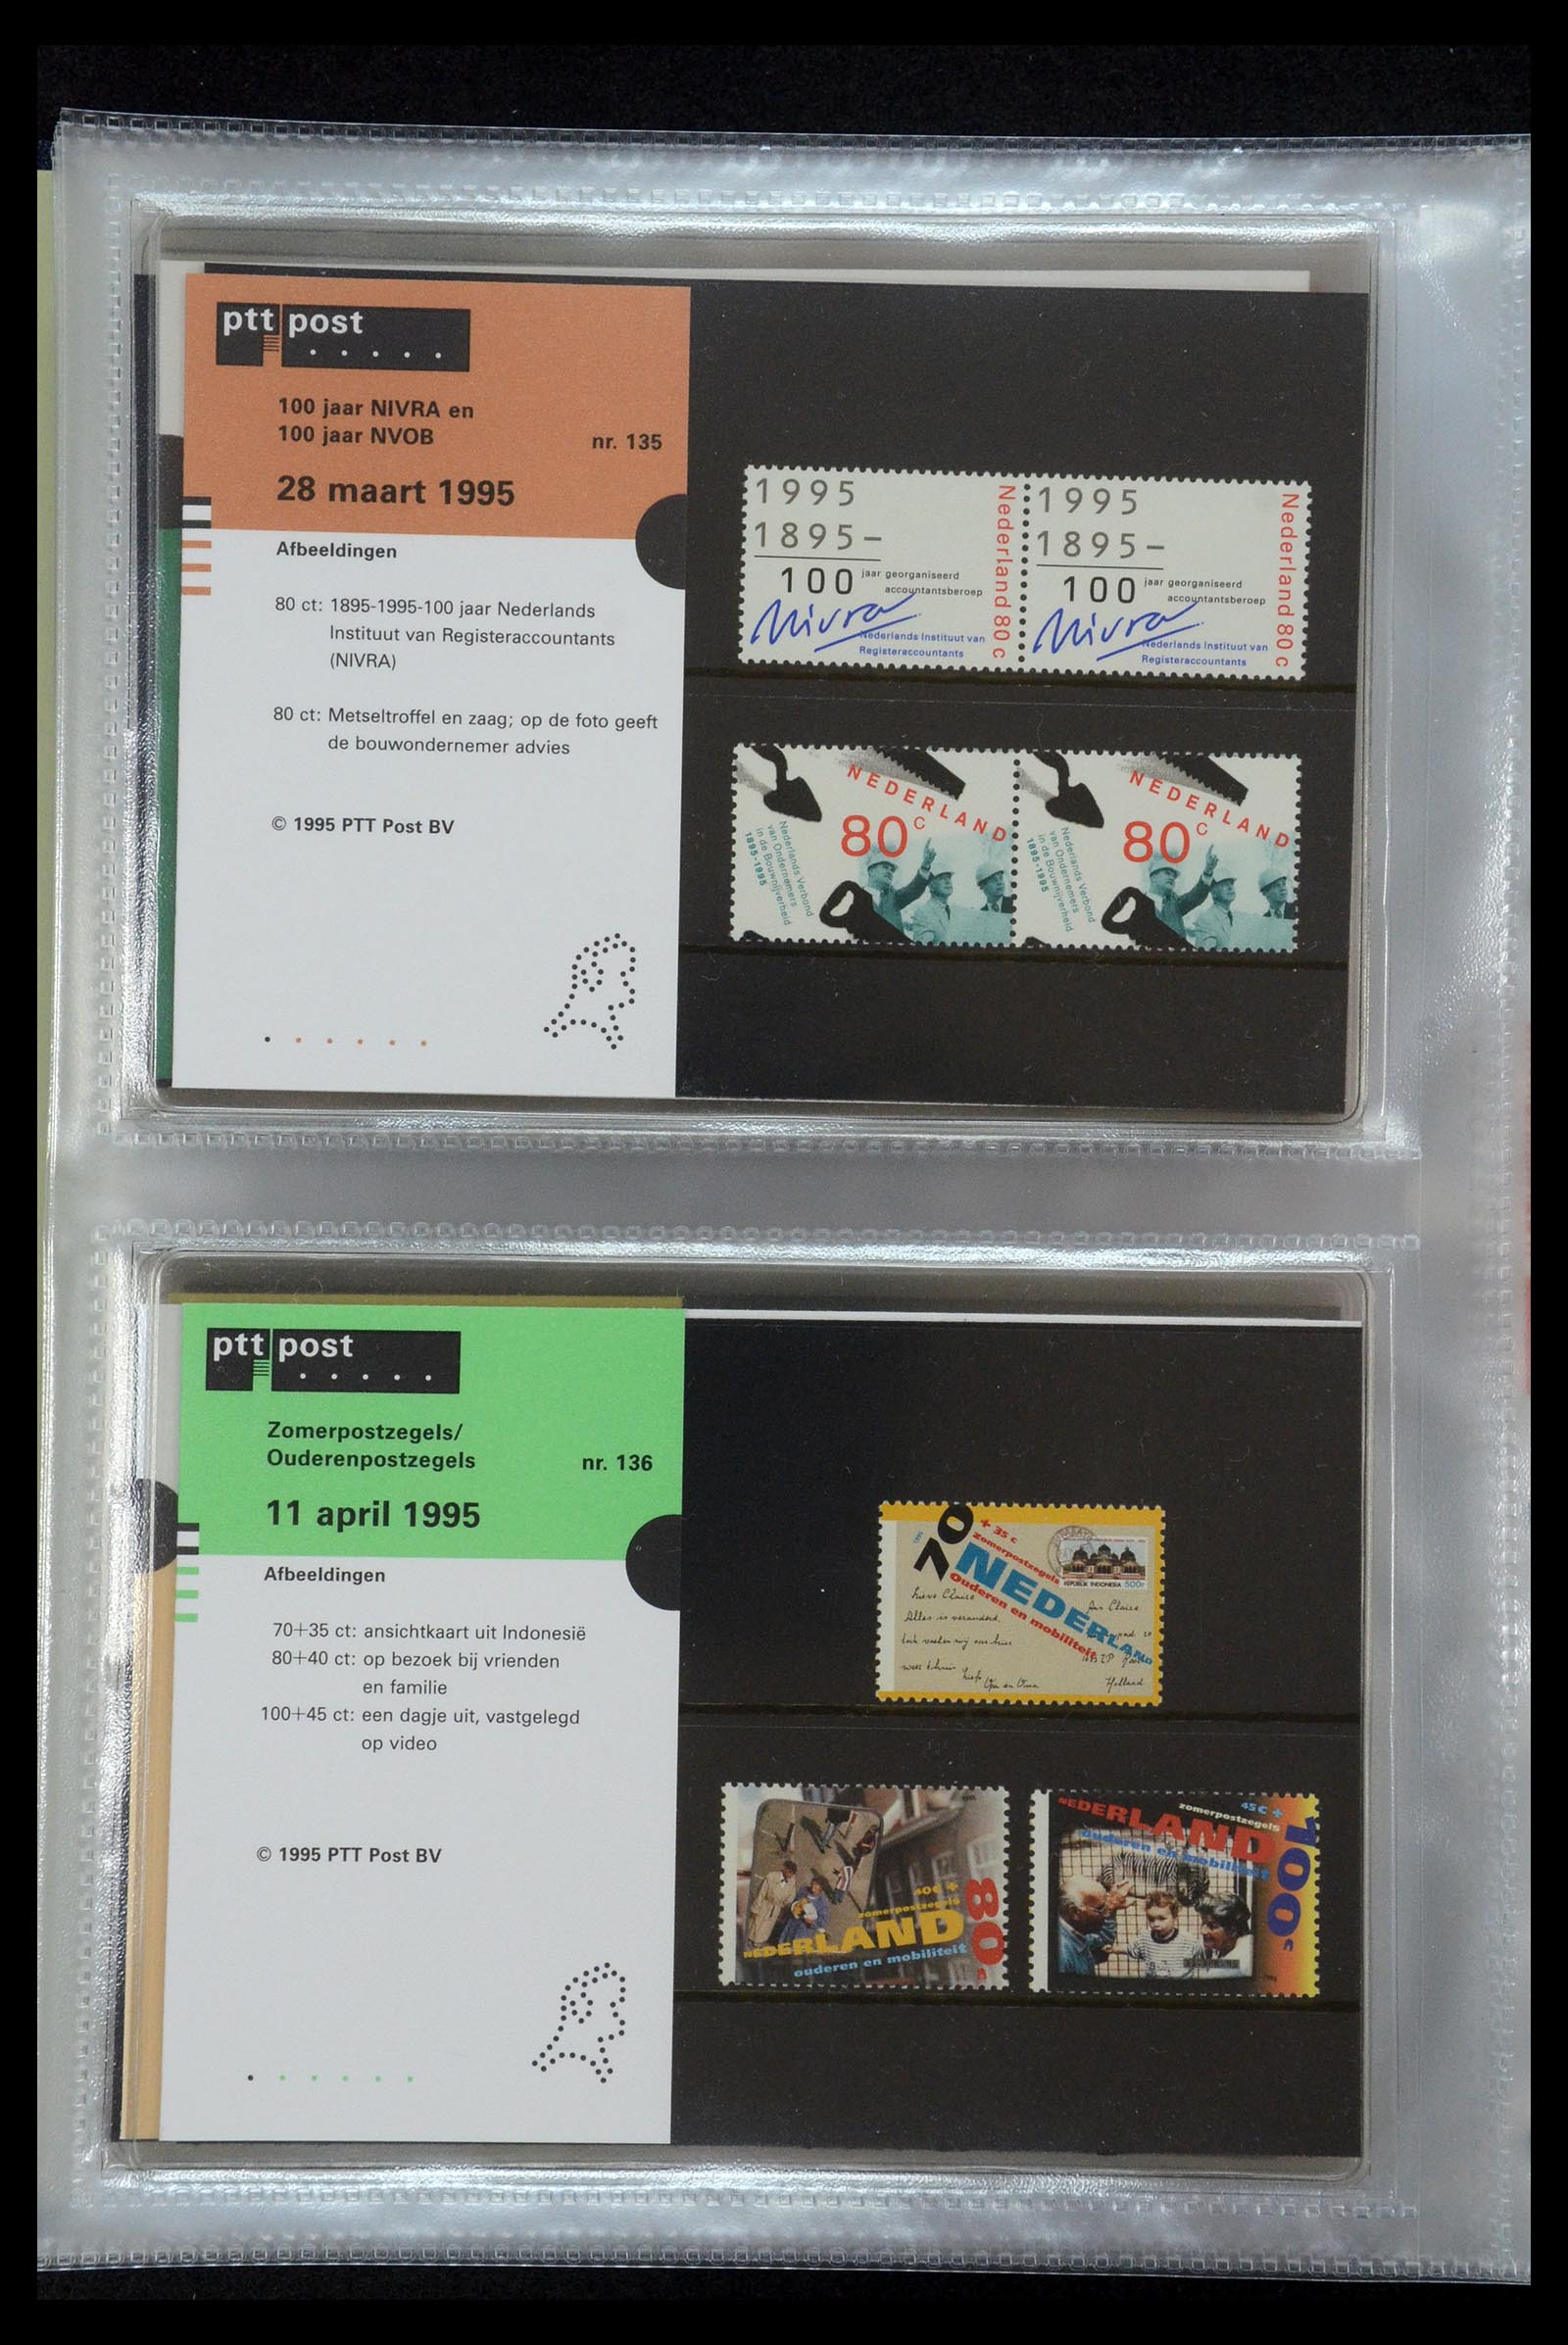 35144 071 - Stamp Collection 35144 Netherlands PTT presentation packs 1982-2021!